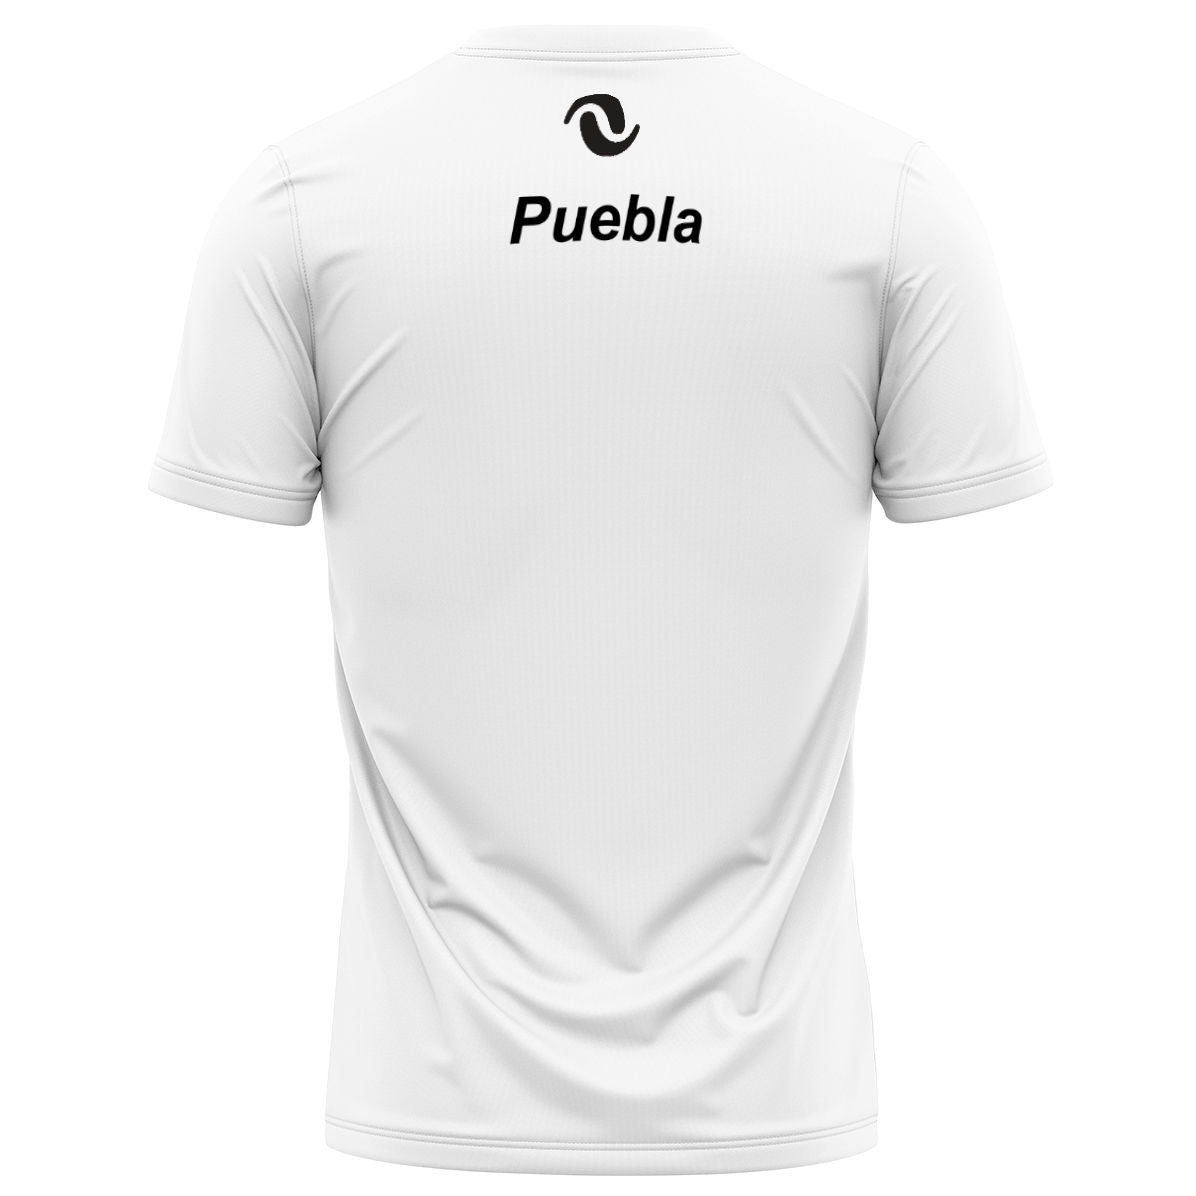 NV Puebla - Performance Shirt